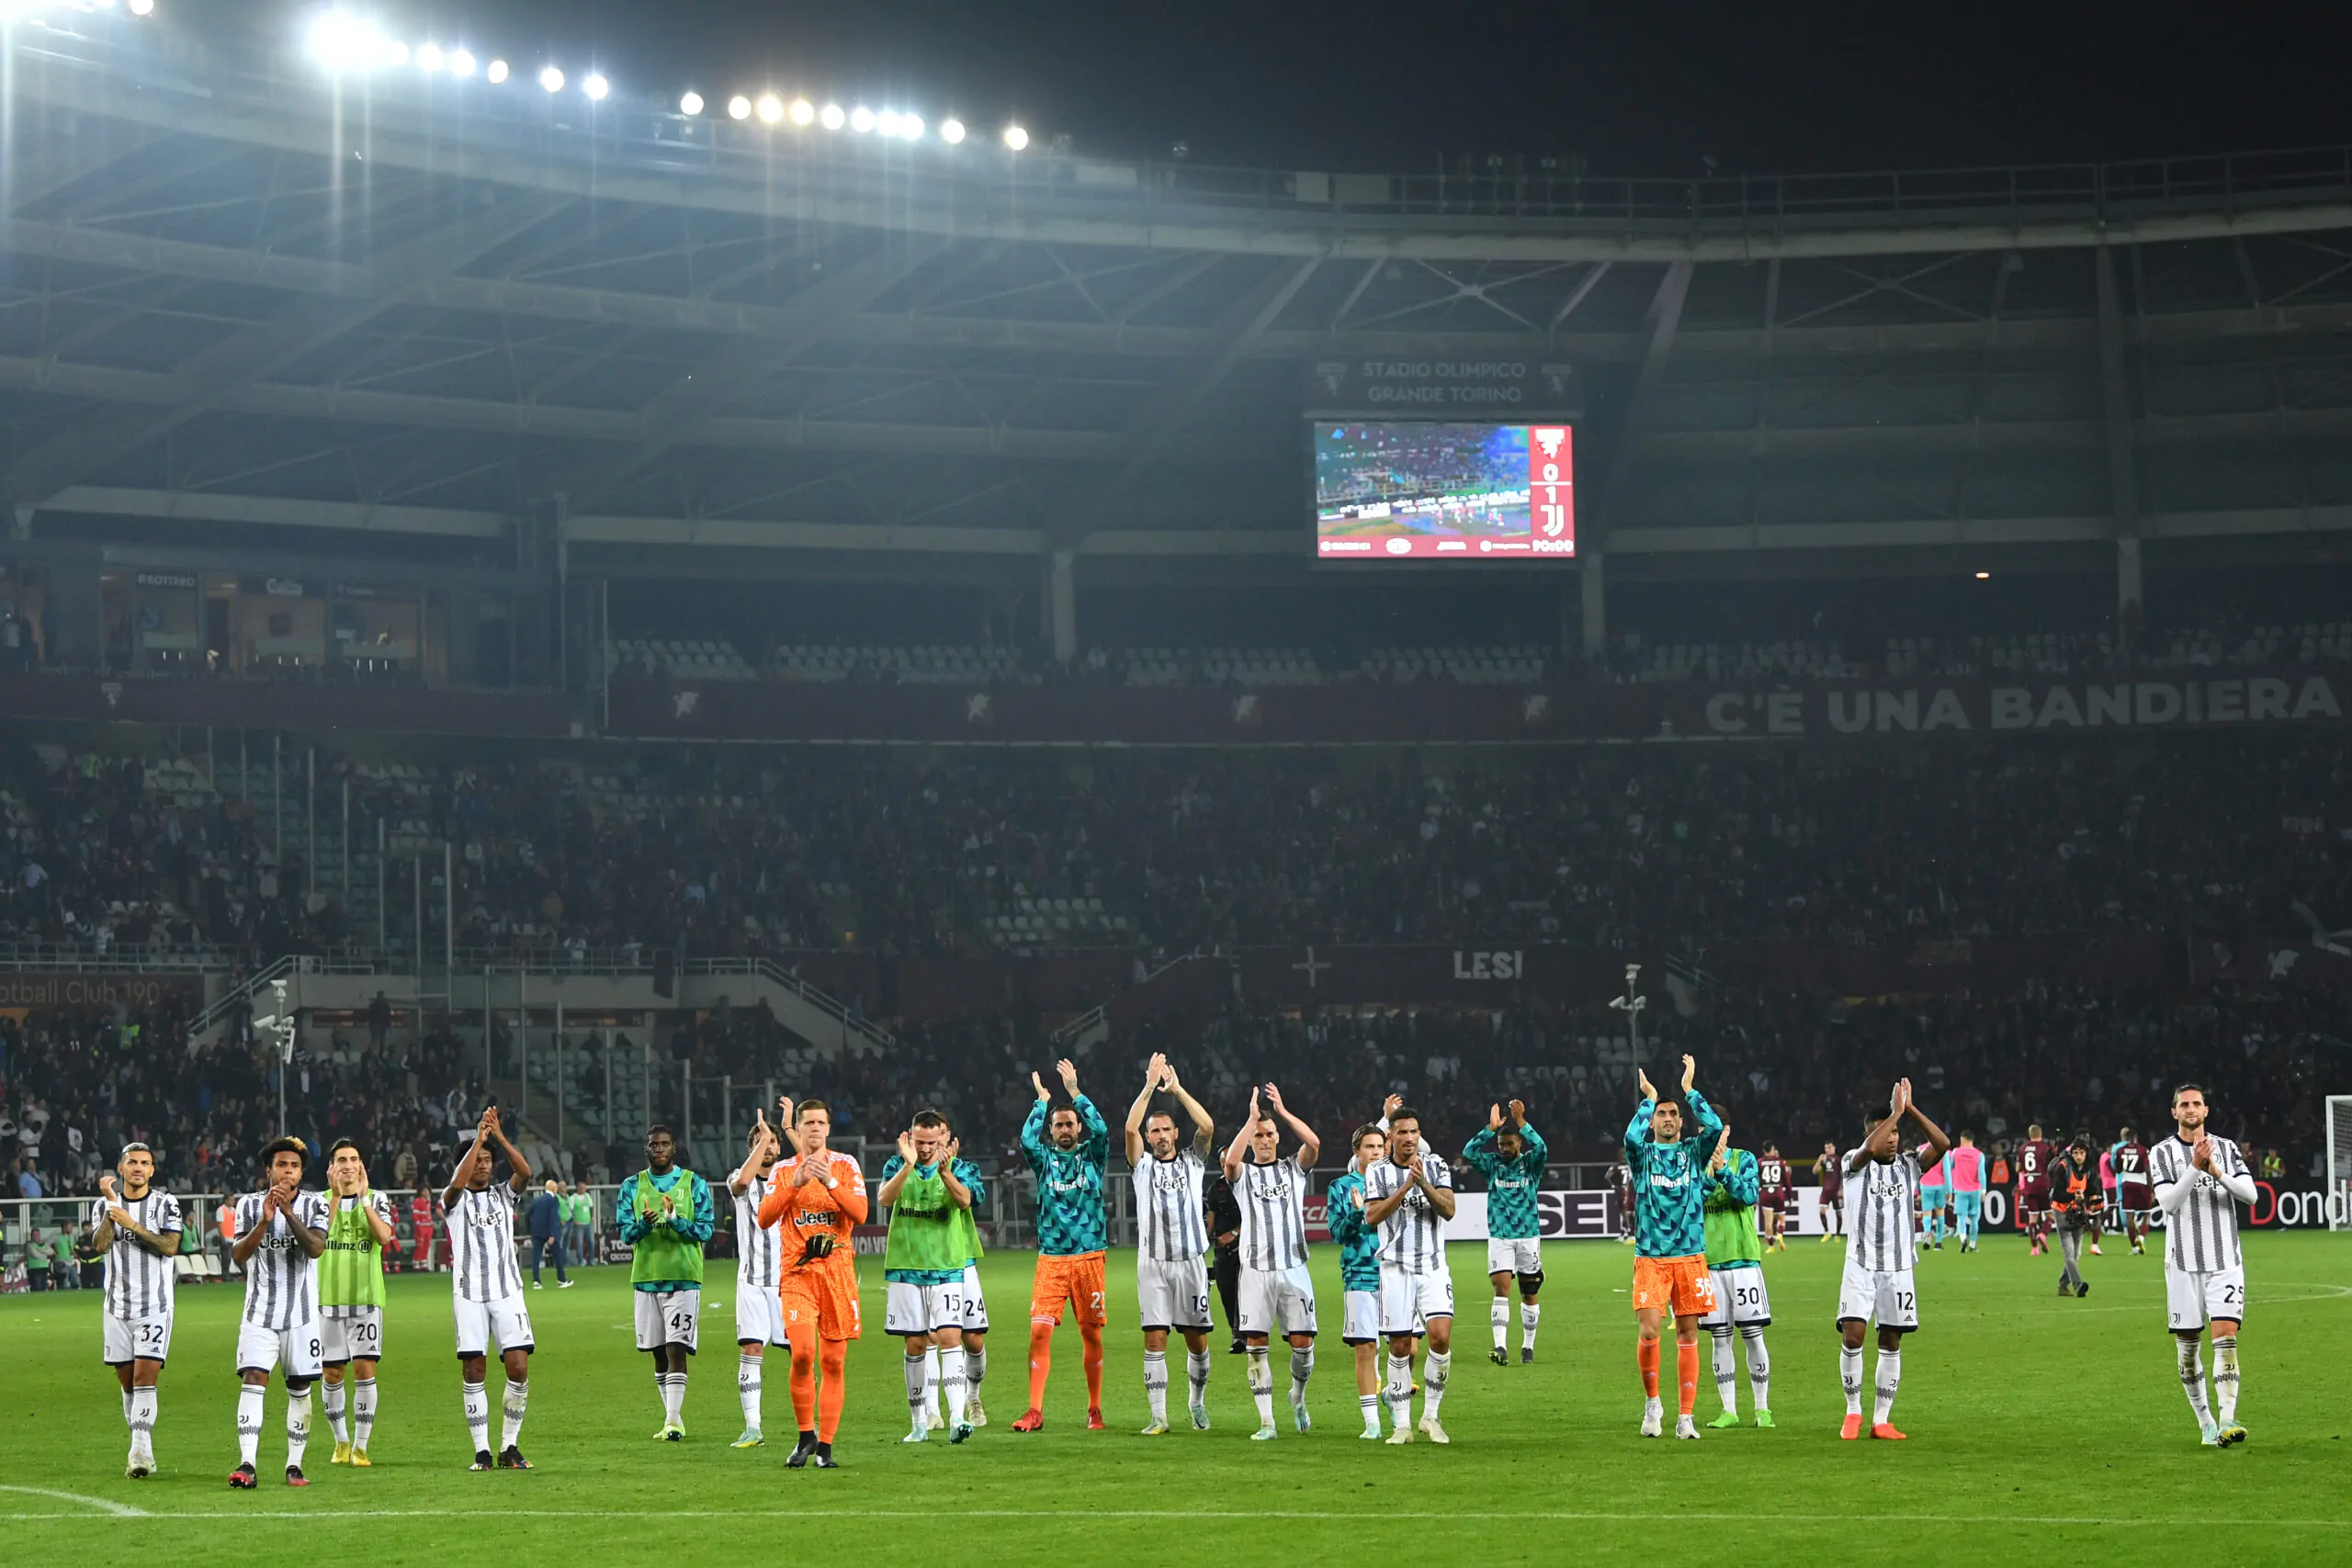 Derby di Torino, la Juventus domina nell’era Cairo: numeri straordinari